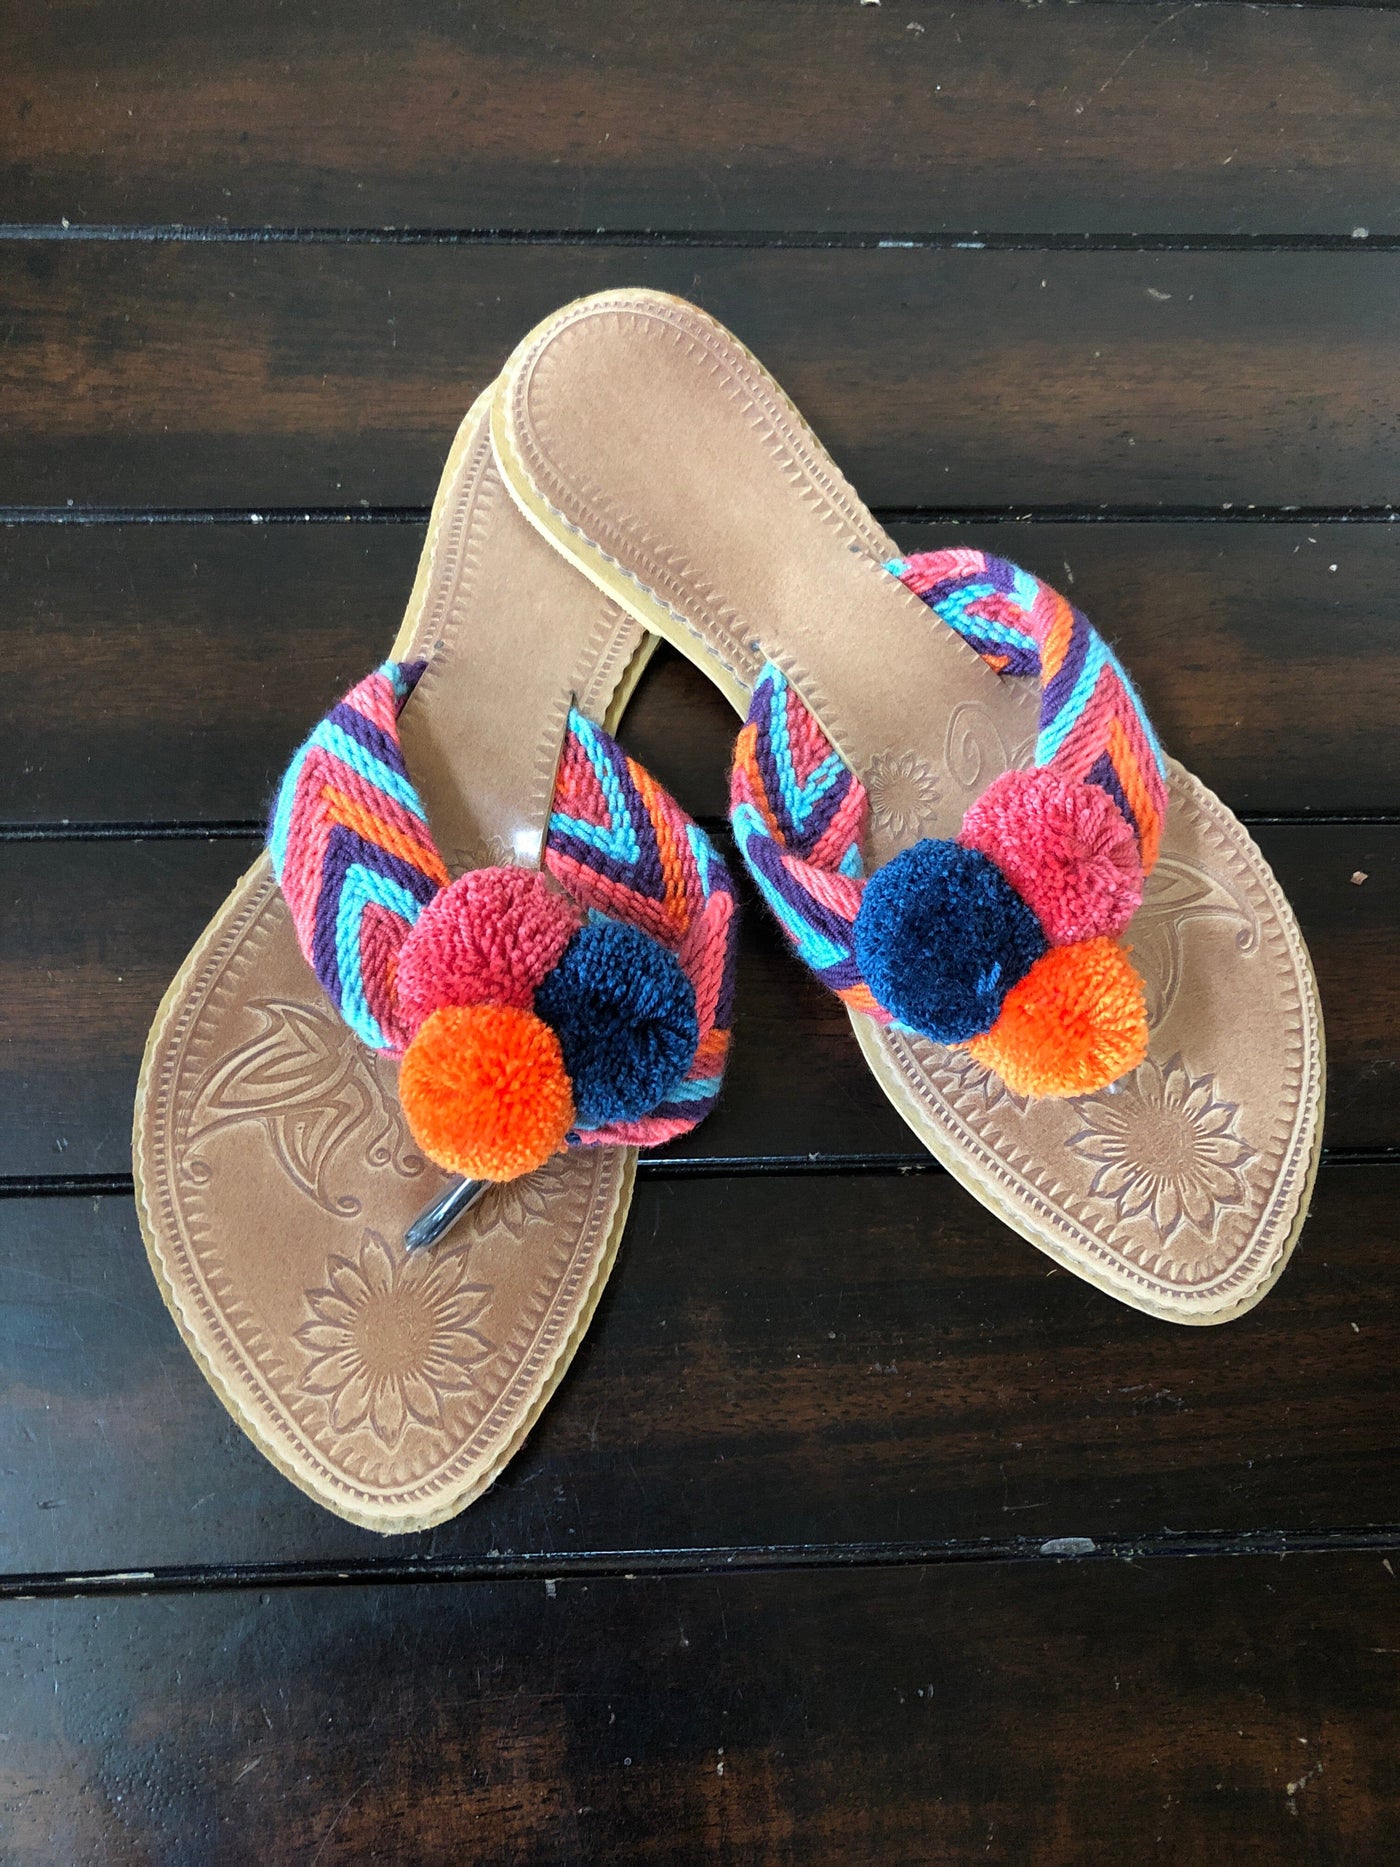 Colorful Handwoven Flip-Flops - Pom Pom Sandals SWP005 Sandalias Wayuu Pom Pom US 8/8.5 